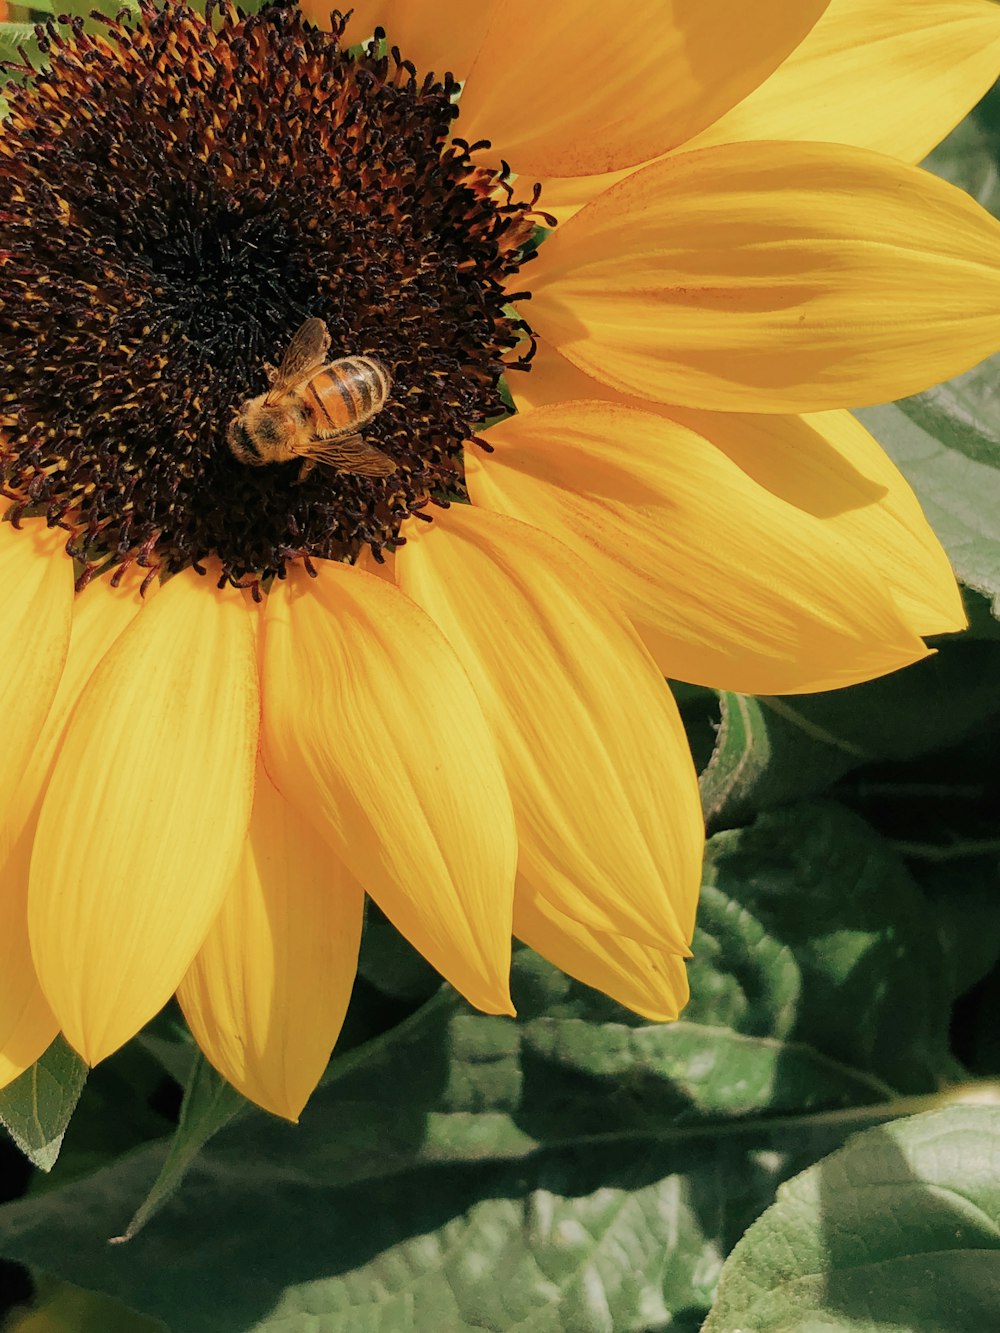 꿀벌이 노란 해바라기에 앉아 근접 촬영 사진을 찍고 있습니다.